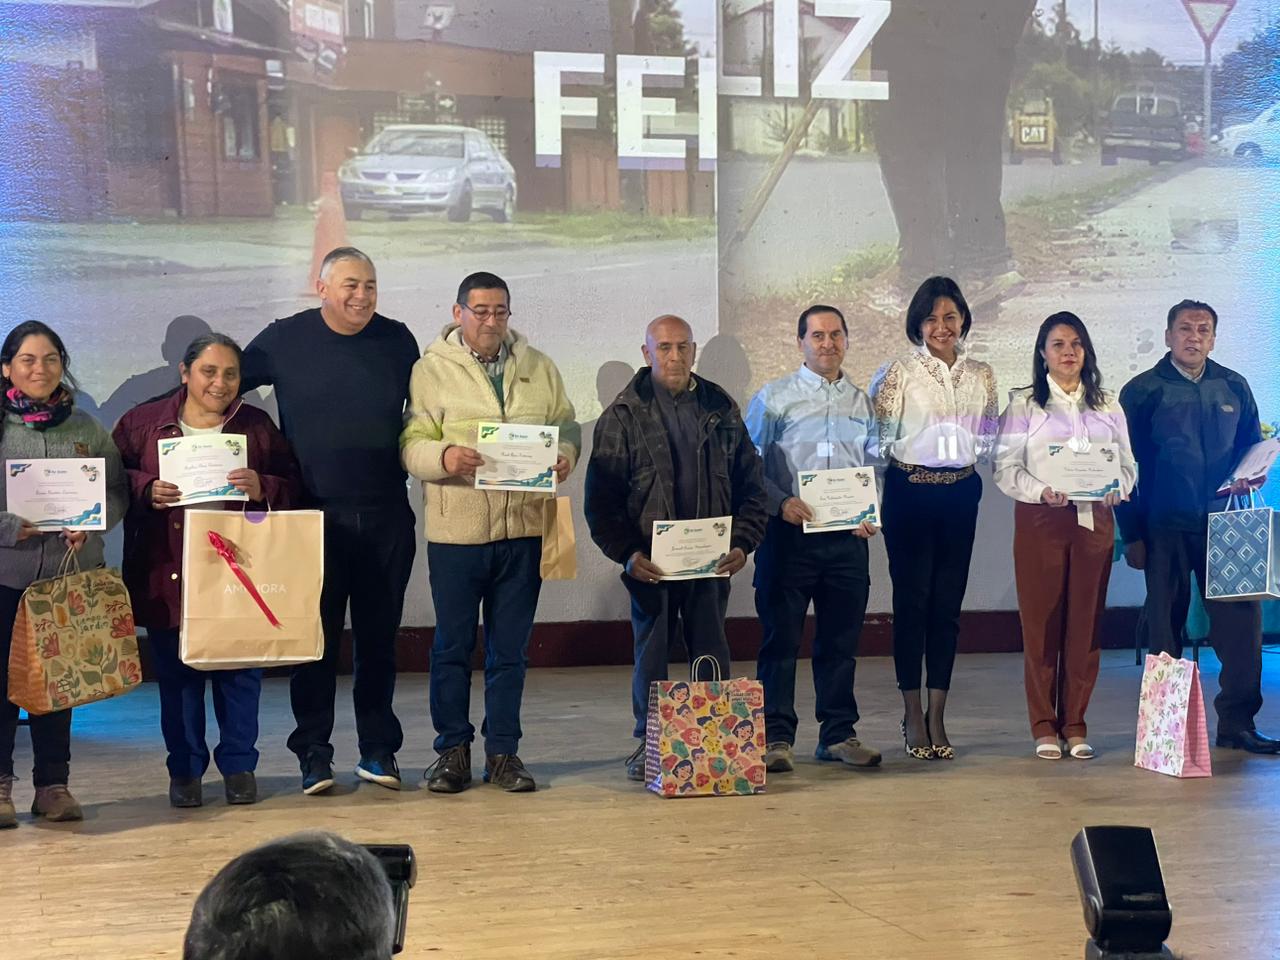 Municipalidad de Río Bueno galardona a colaboradores de Avifel